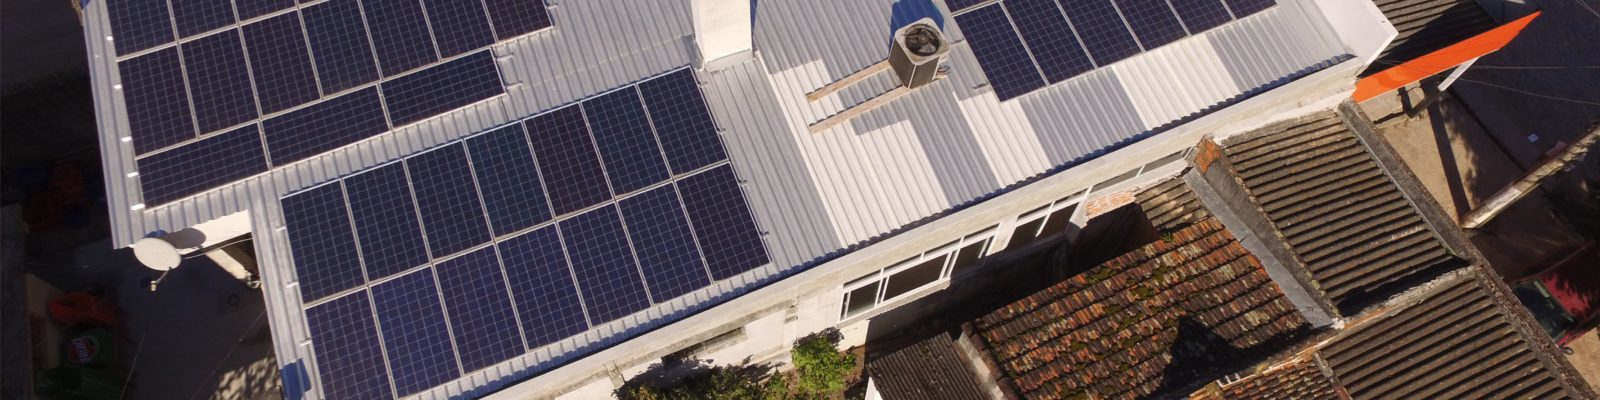 Energia limpa em Pelotas - Elysia energia solar Rio Grande do Sul